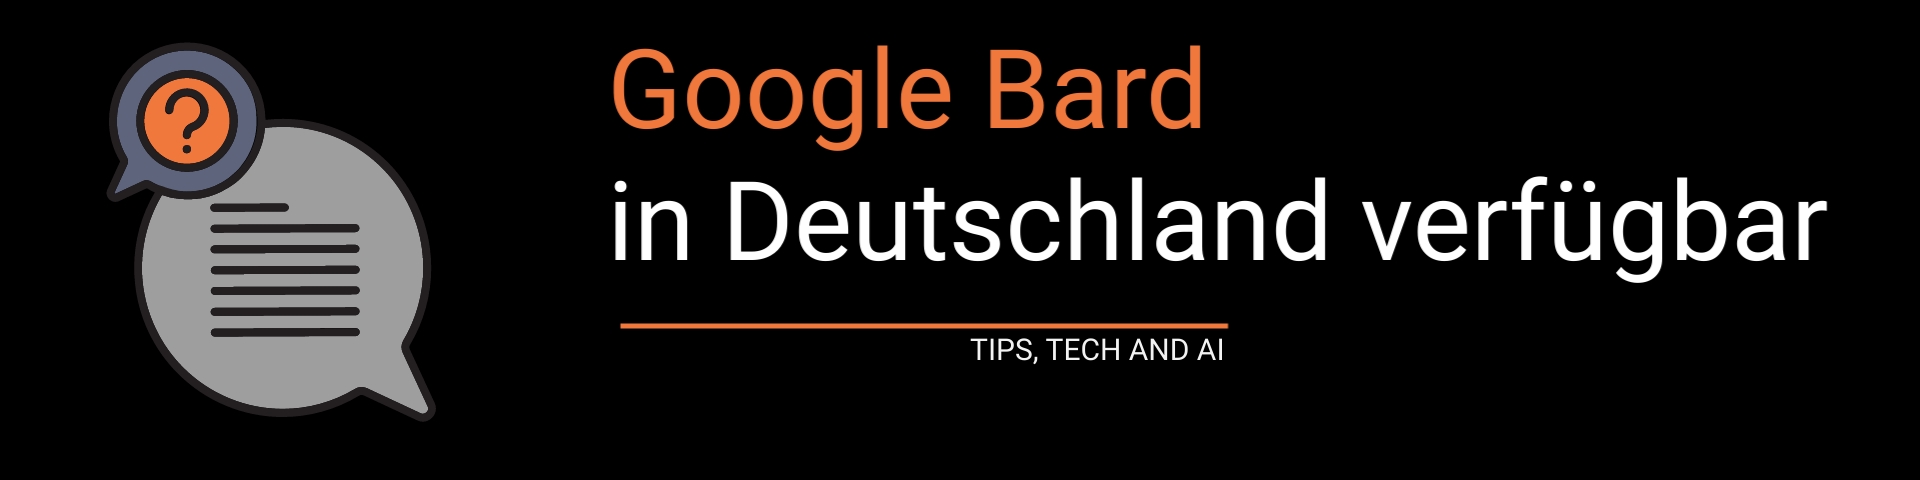 Google Bard jetzt auch in Deutschland verfügbar